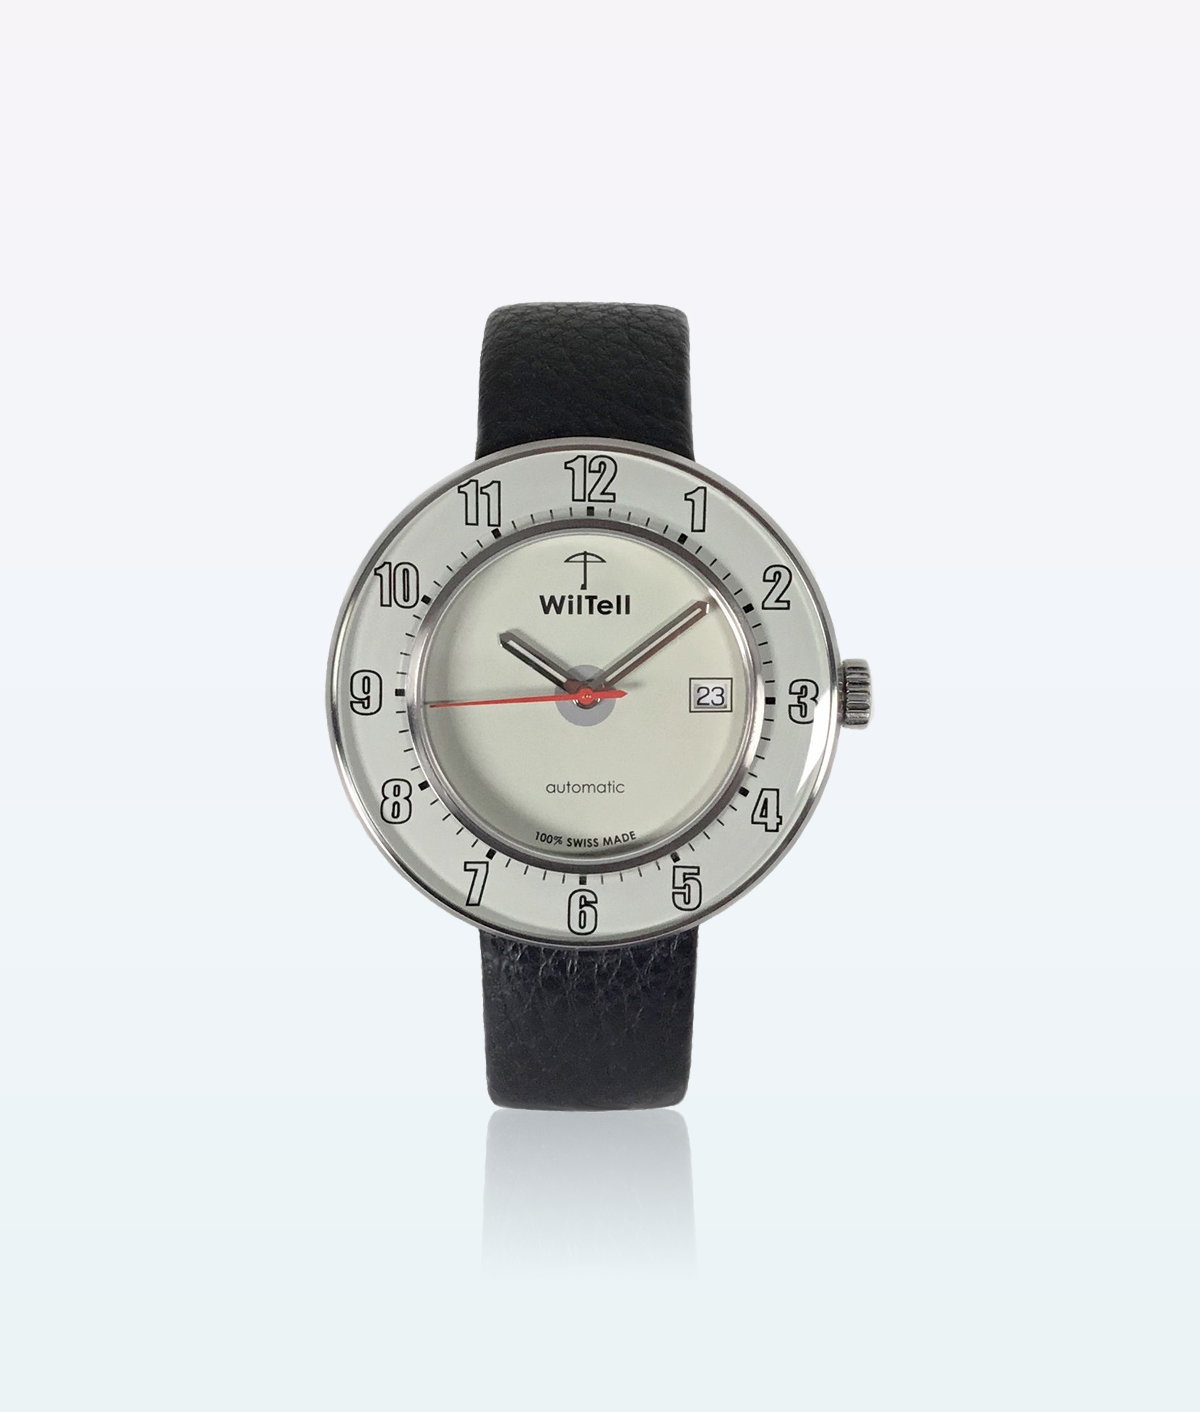 WilTell 100 Swiss Wrist Watch White